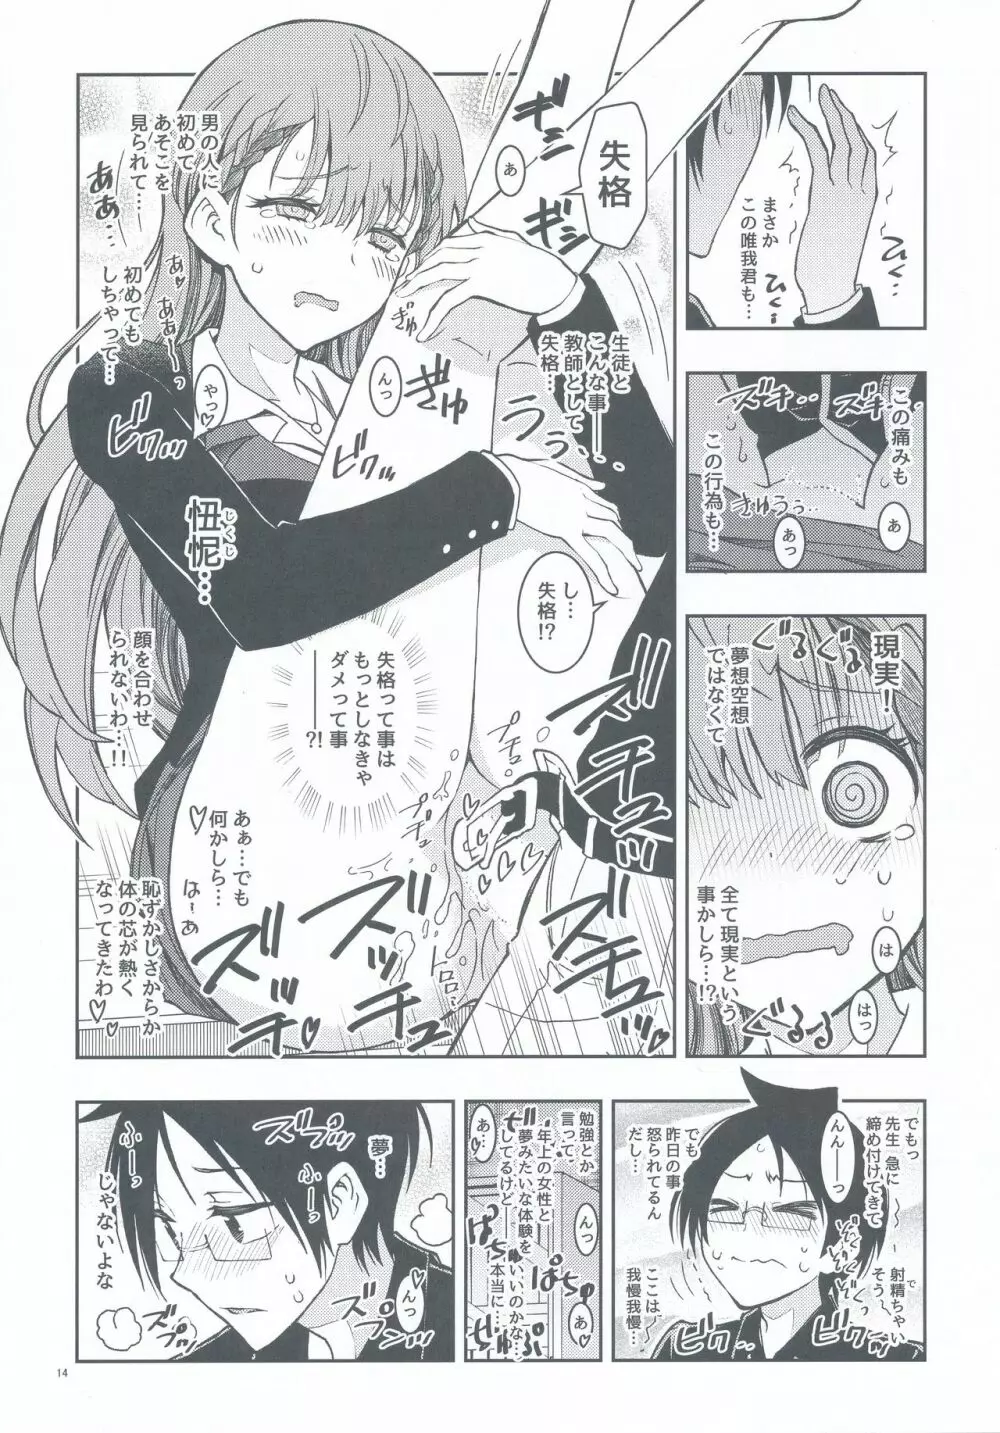 BOKUTACHIHA SENSEIMO URUKAMO KAWAII 14ページ